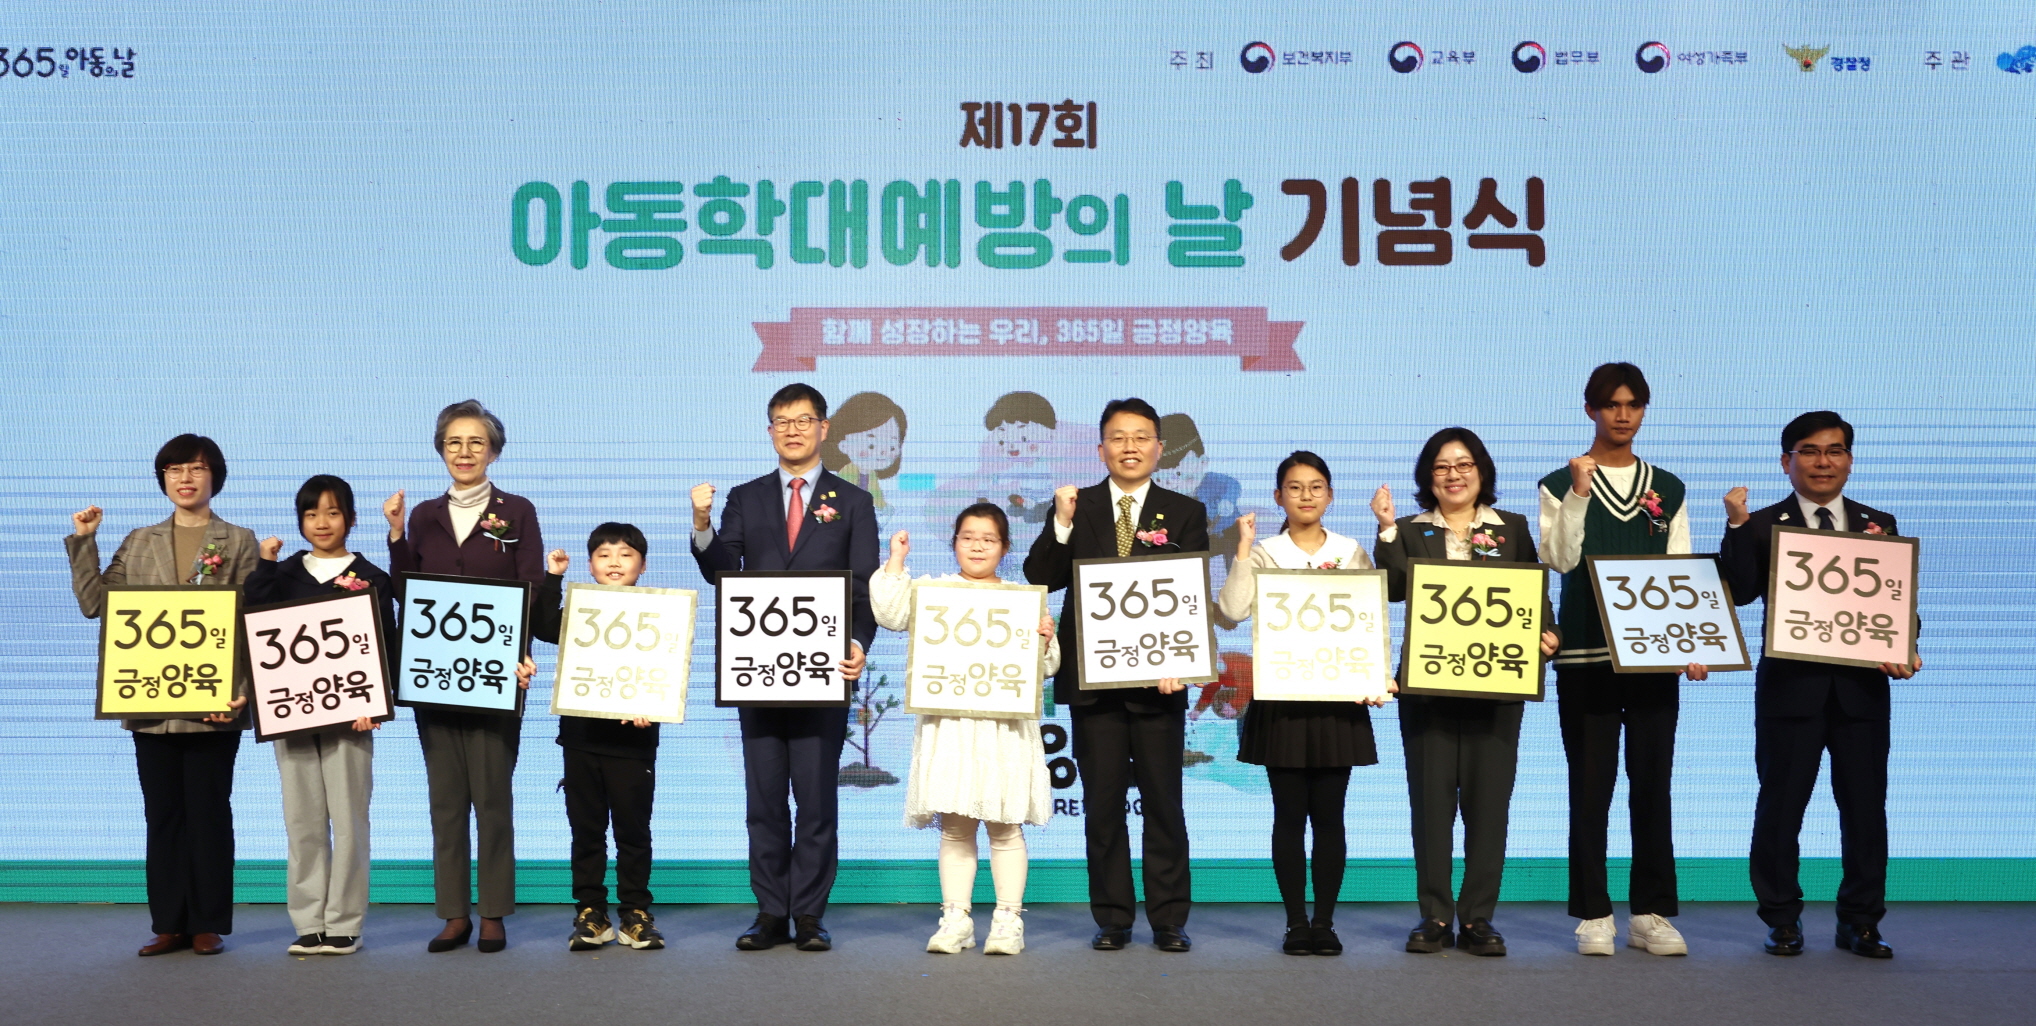 제17회 아동학대예방의날 기념식 개최 사진10